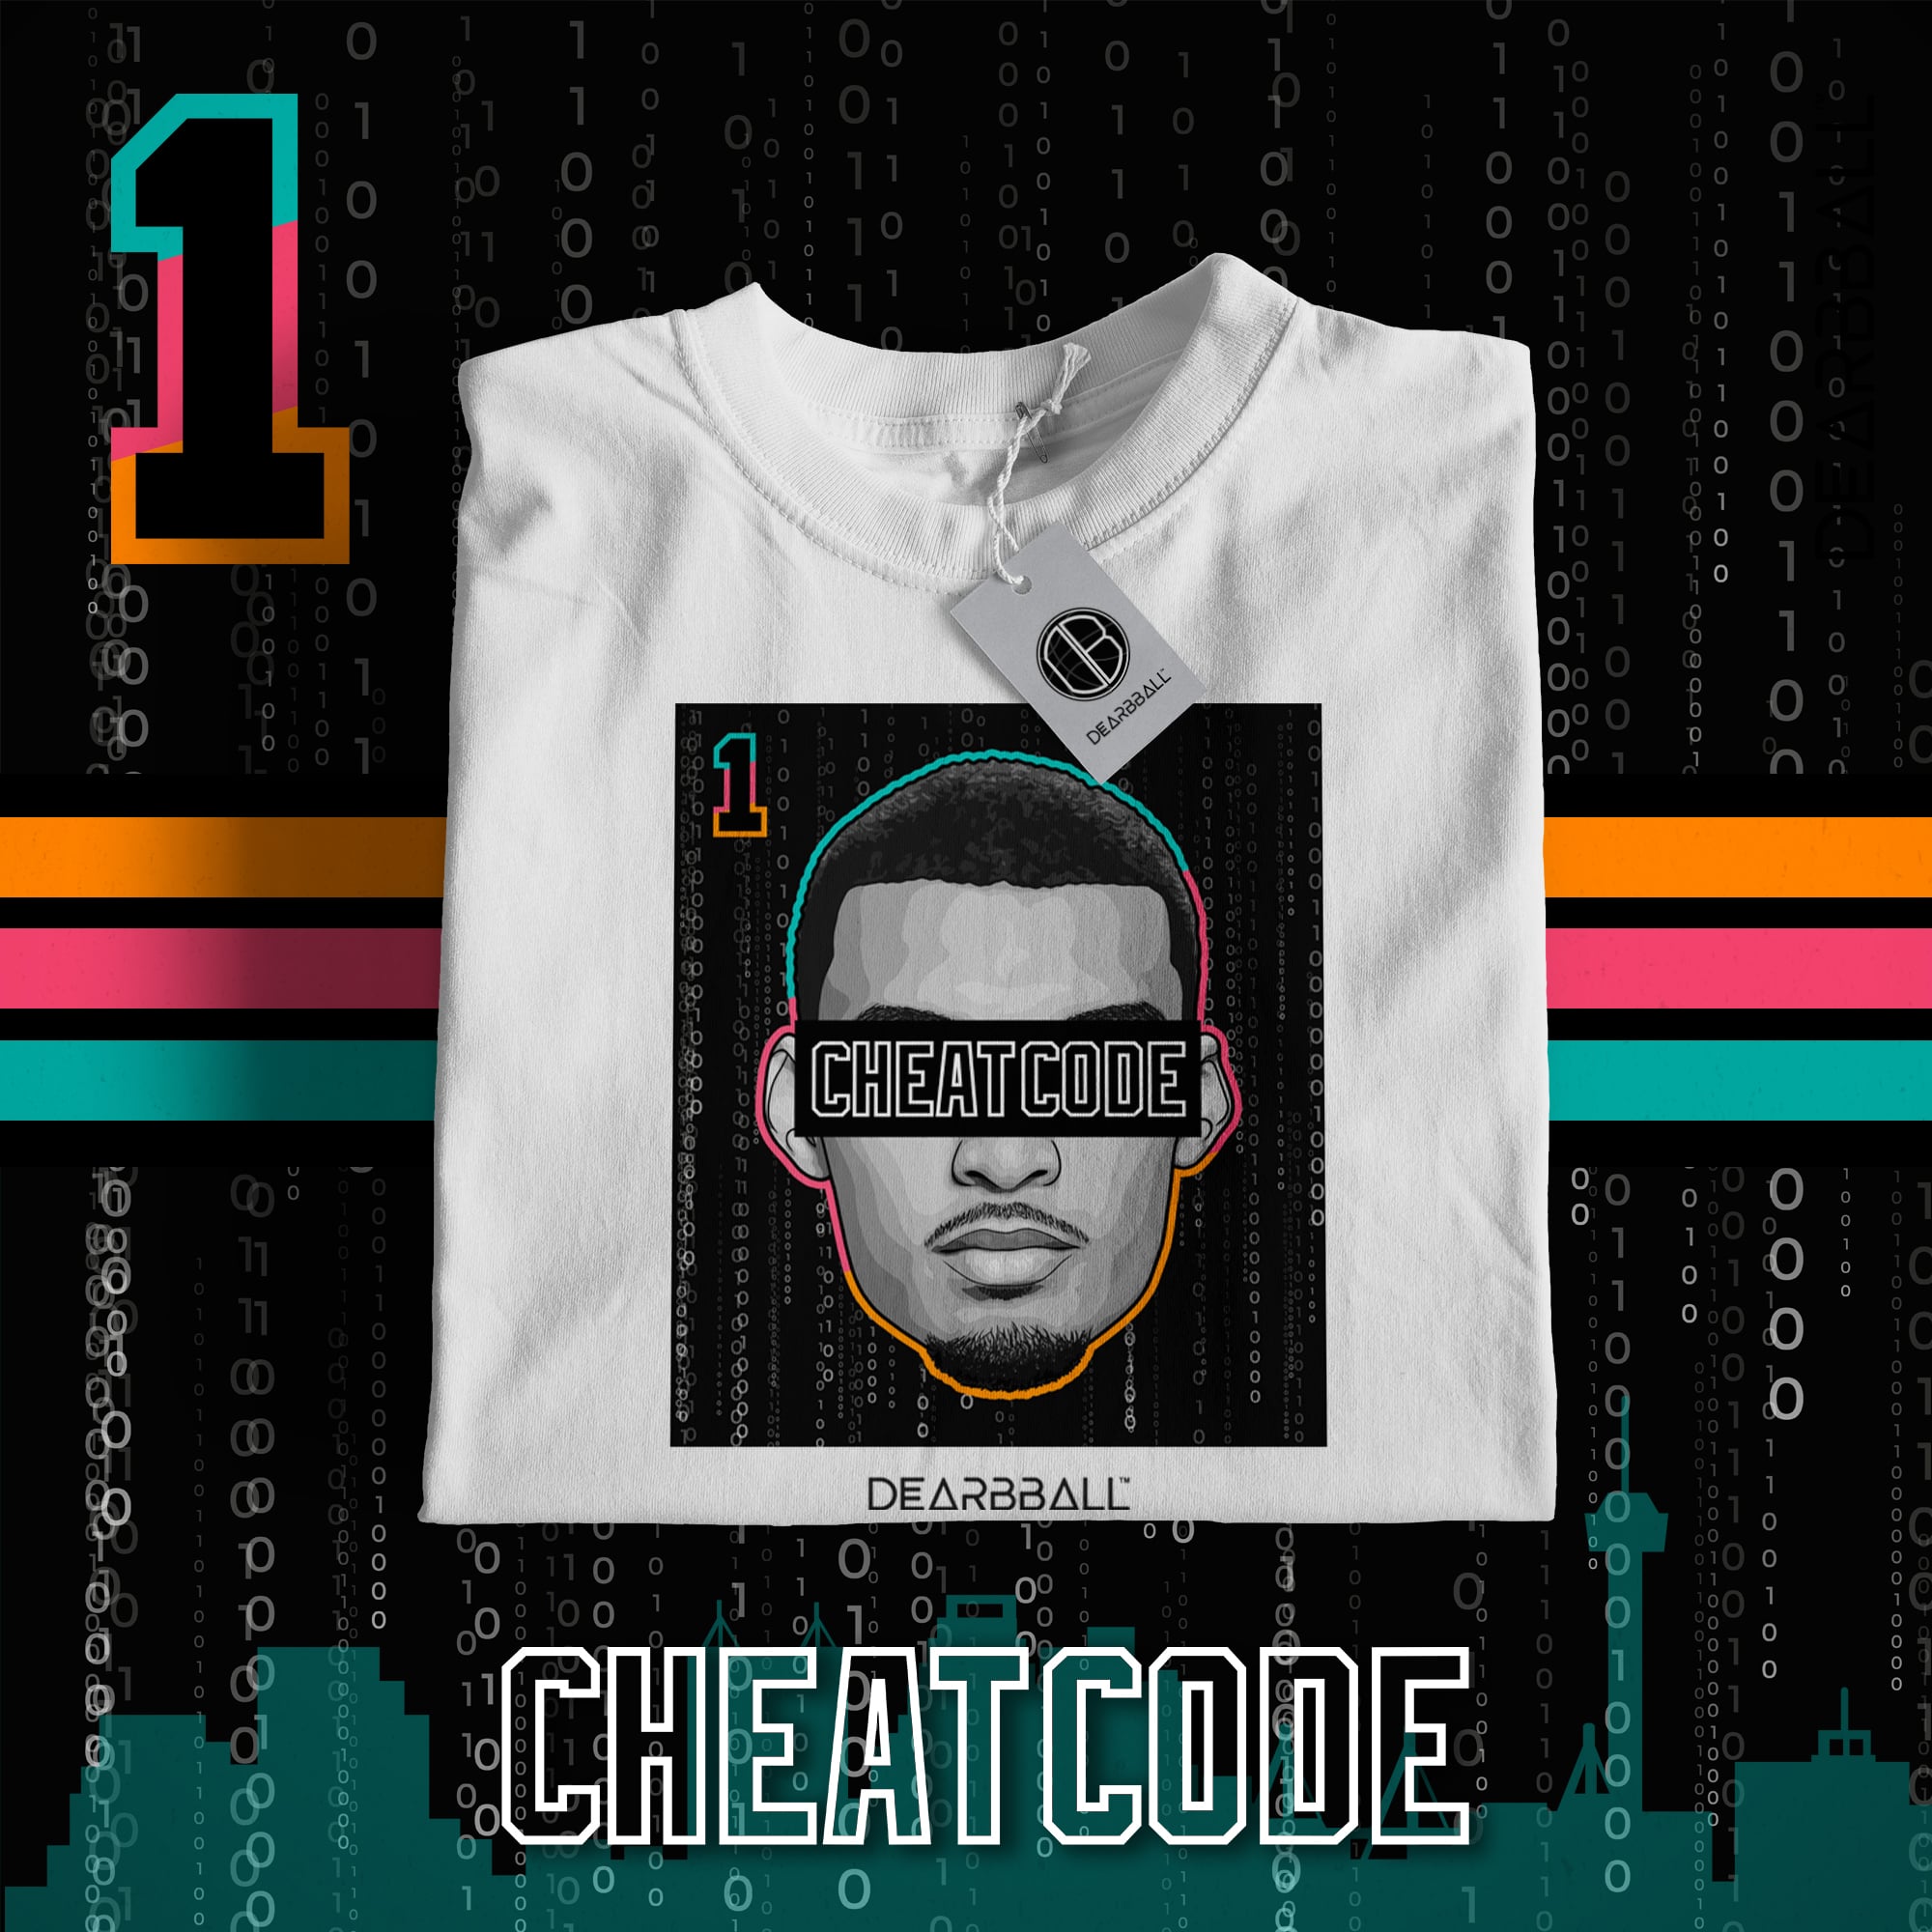 [Bambino] Maglietta DearBBall - CheatCode 1 Edizione Fiesta